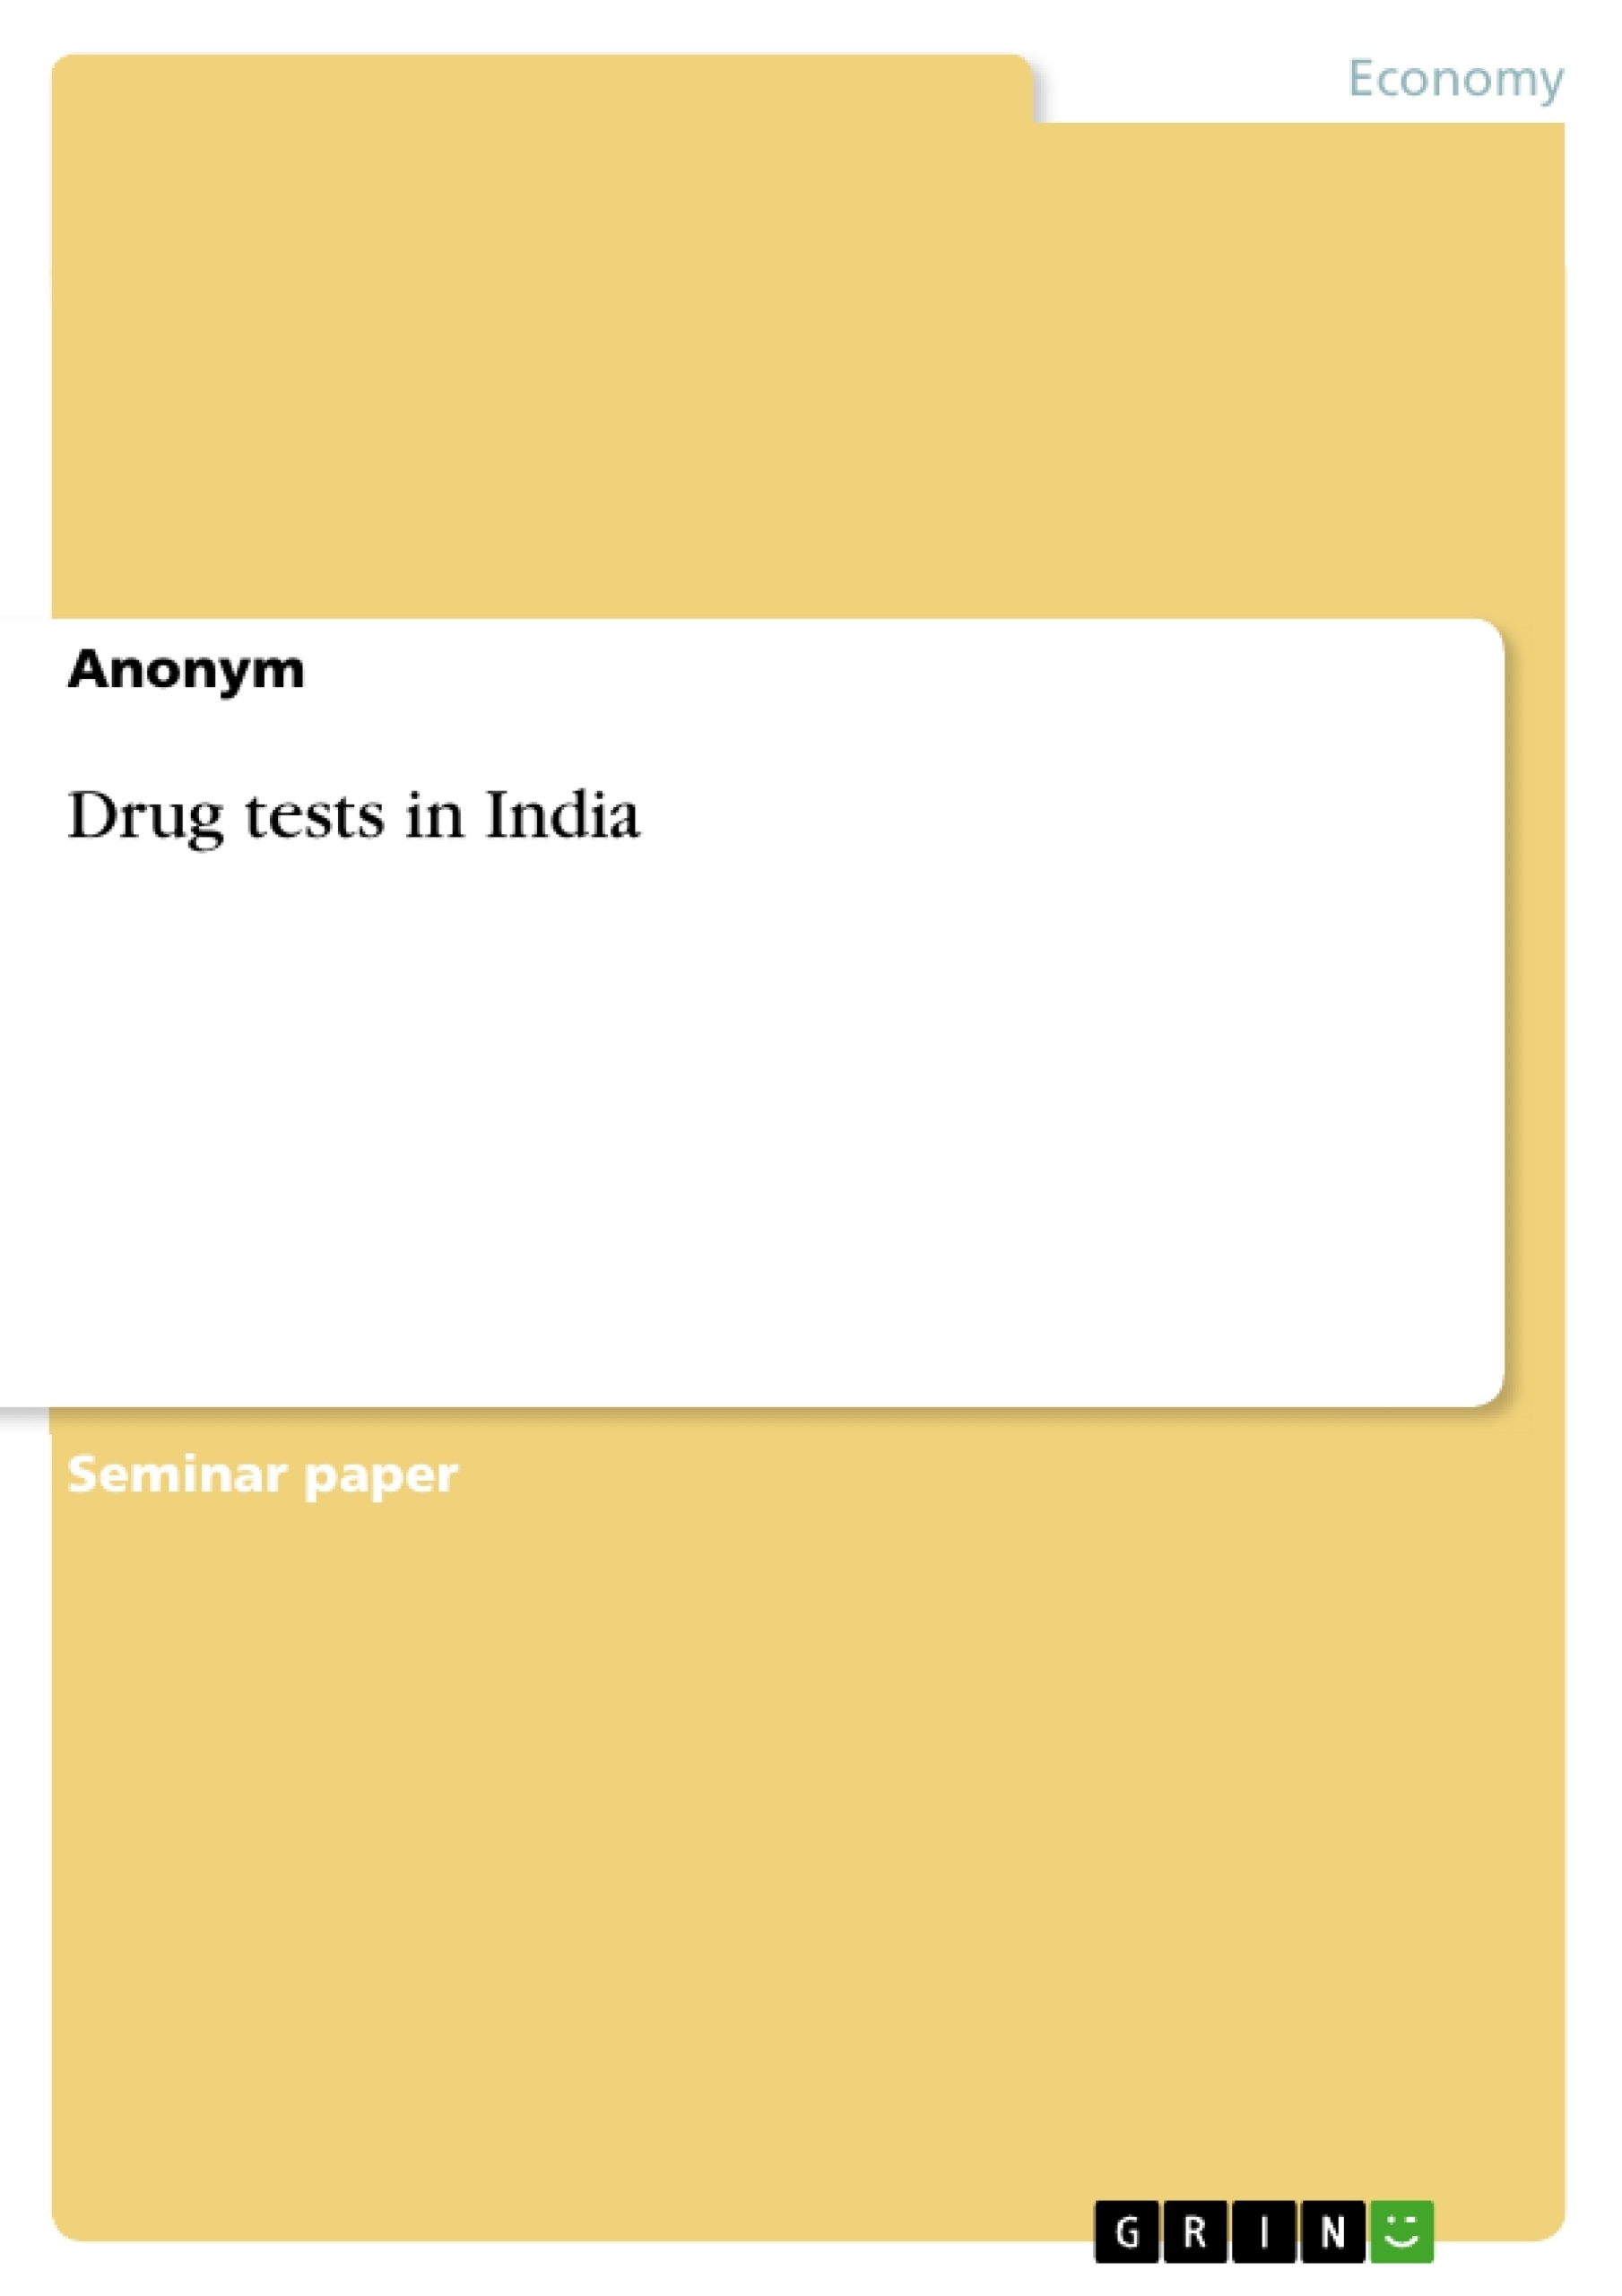 Anonym test